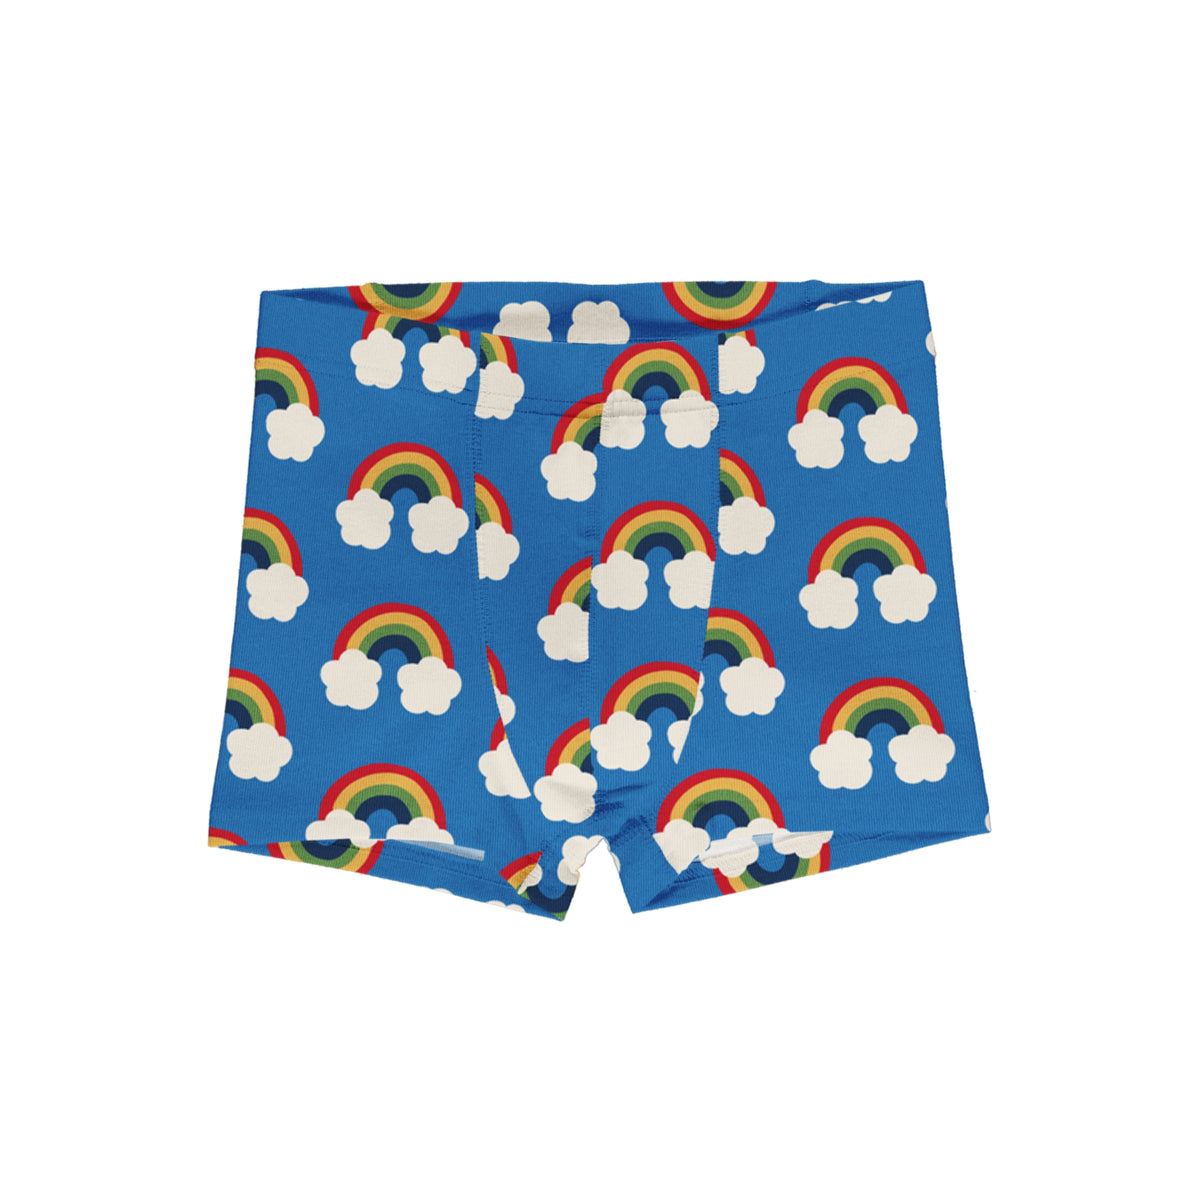 Maxomorra - Boxer Shorts Rainbow - Regenbogen